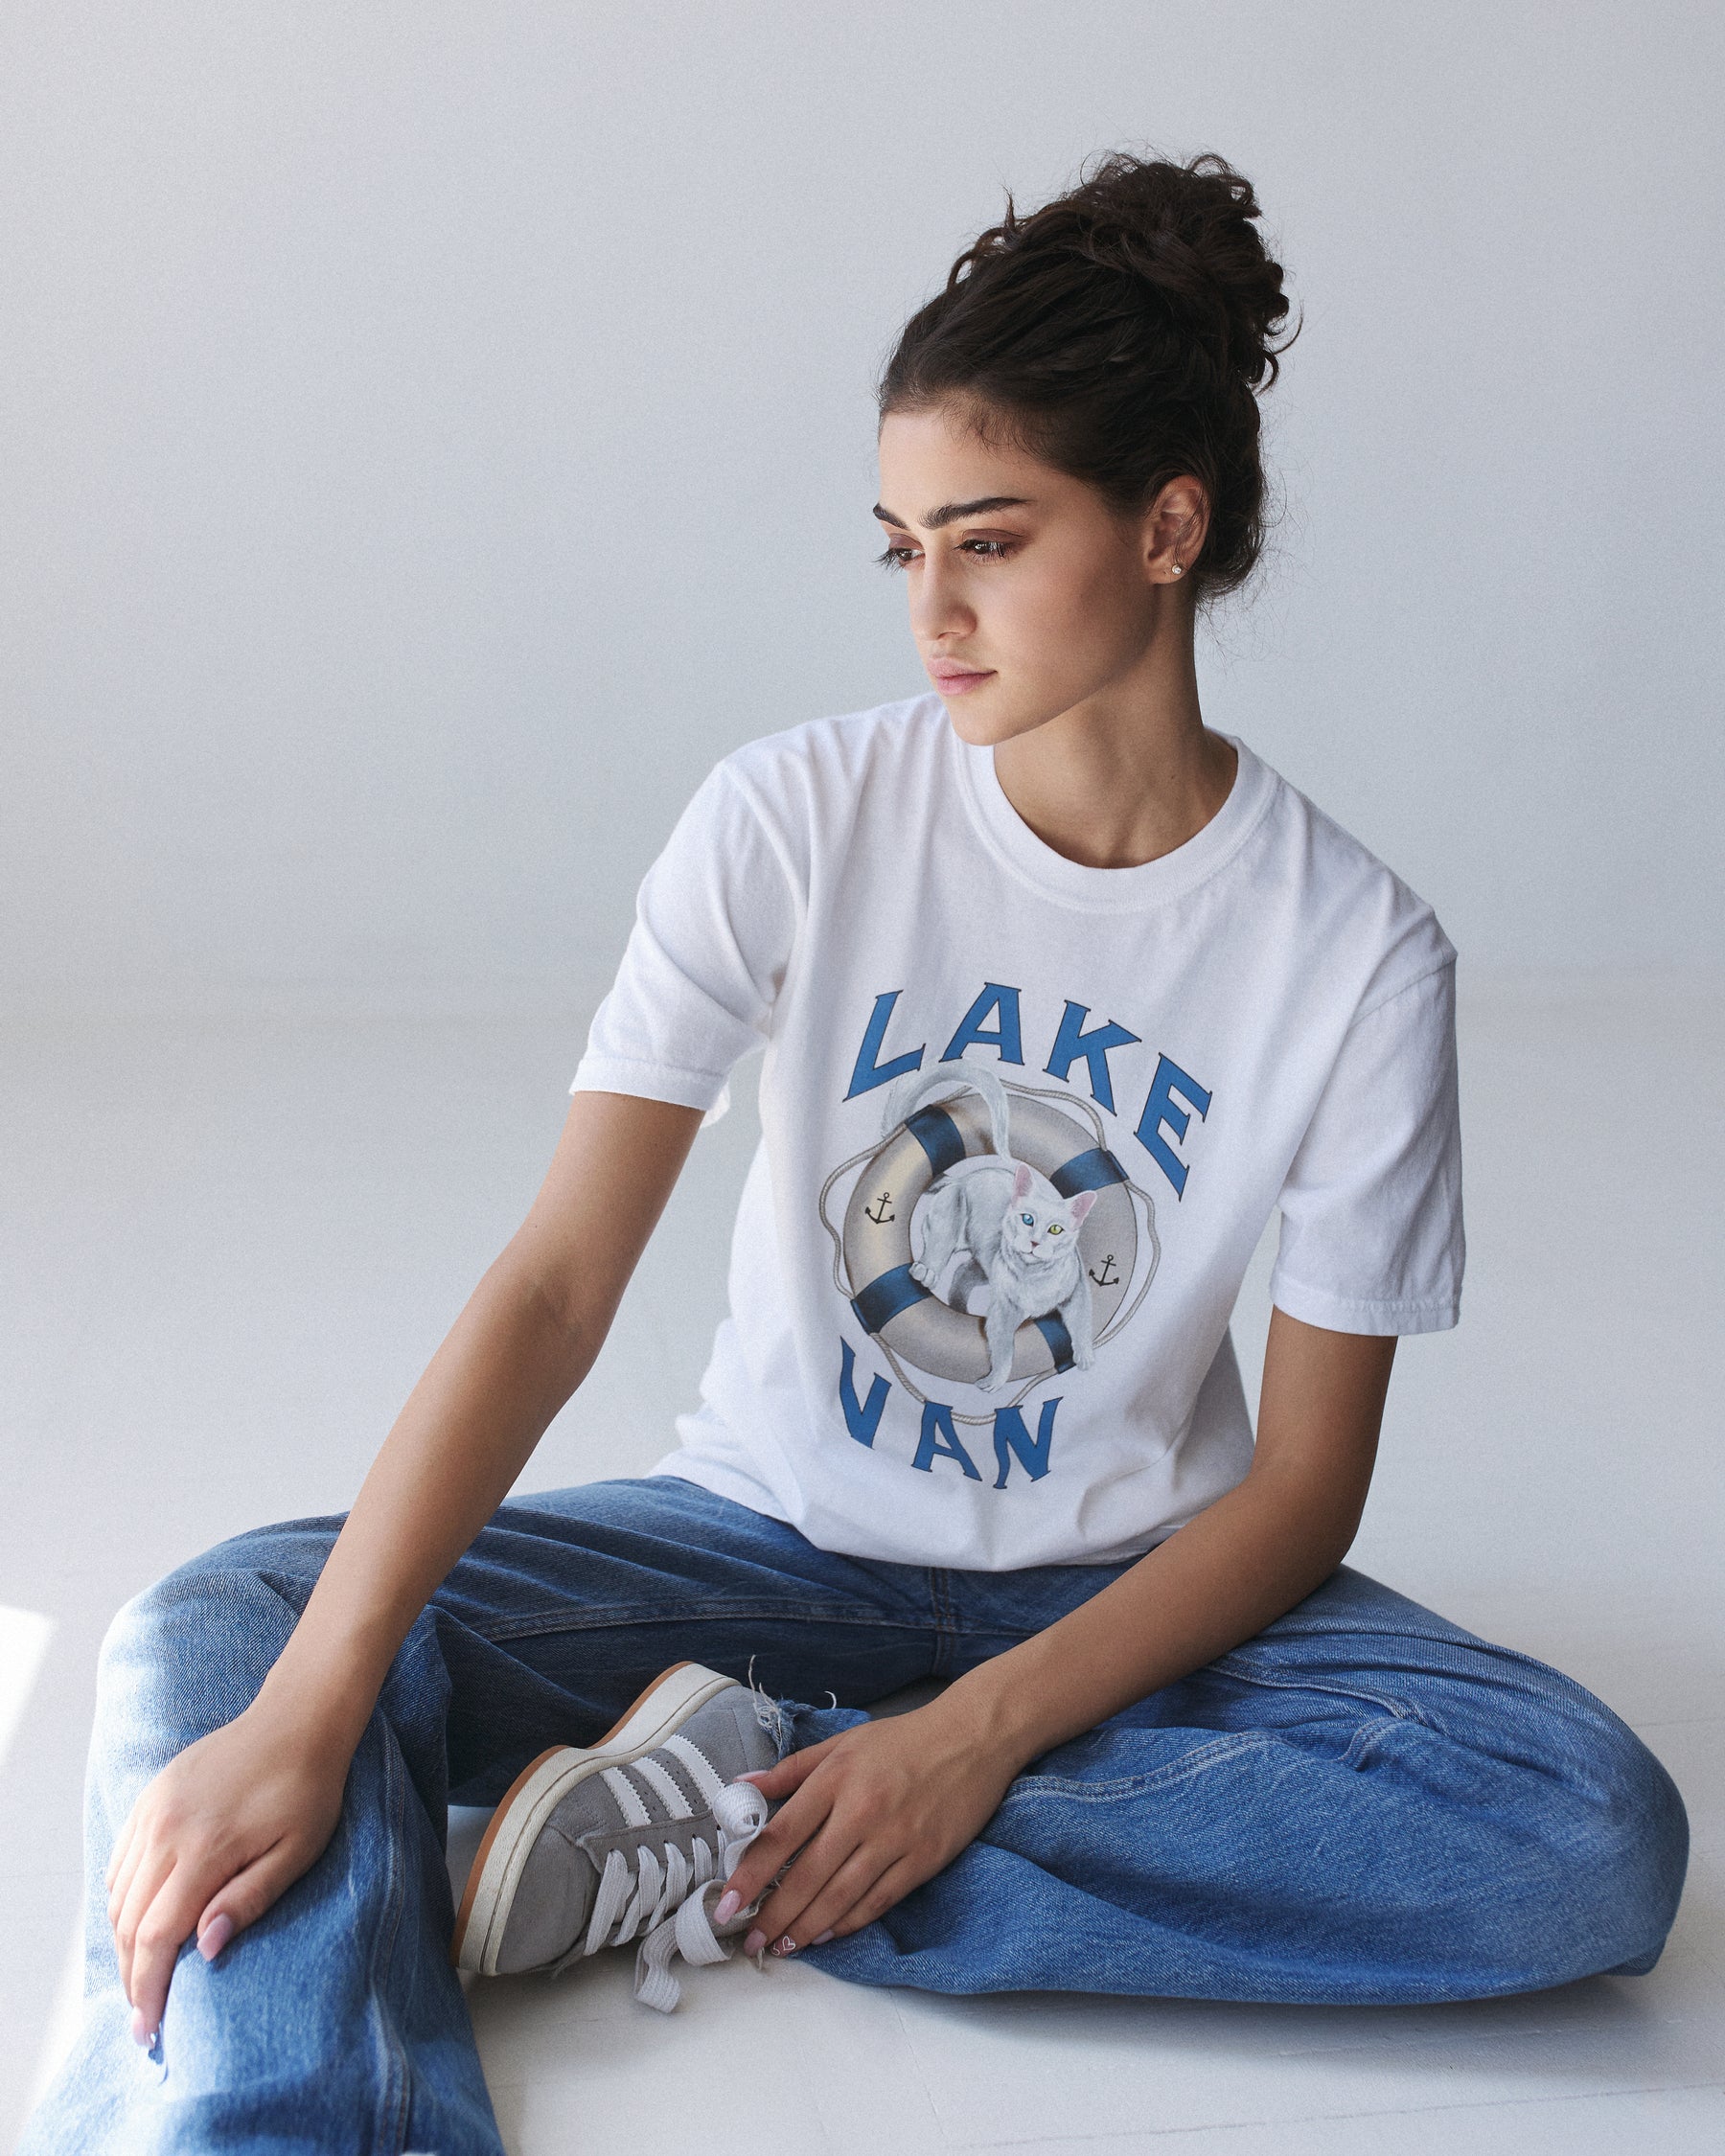 Lake Van Vintage T-Shirt